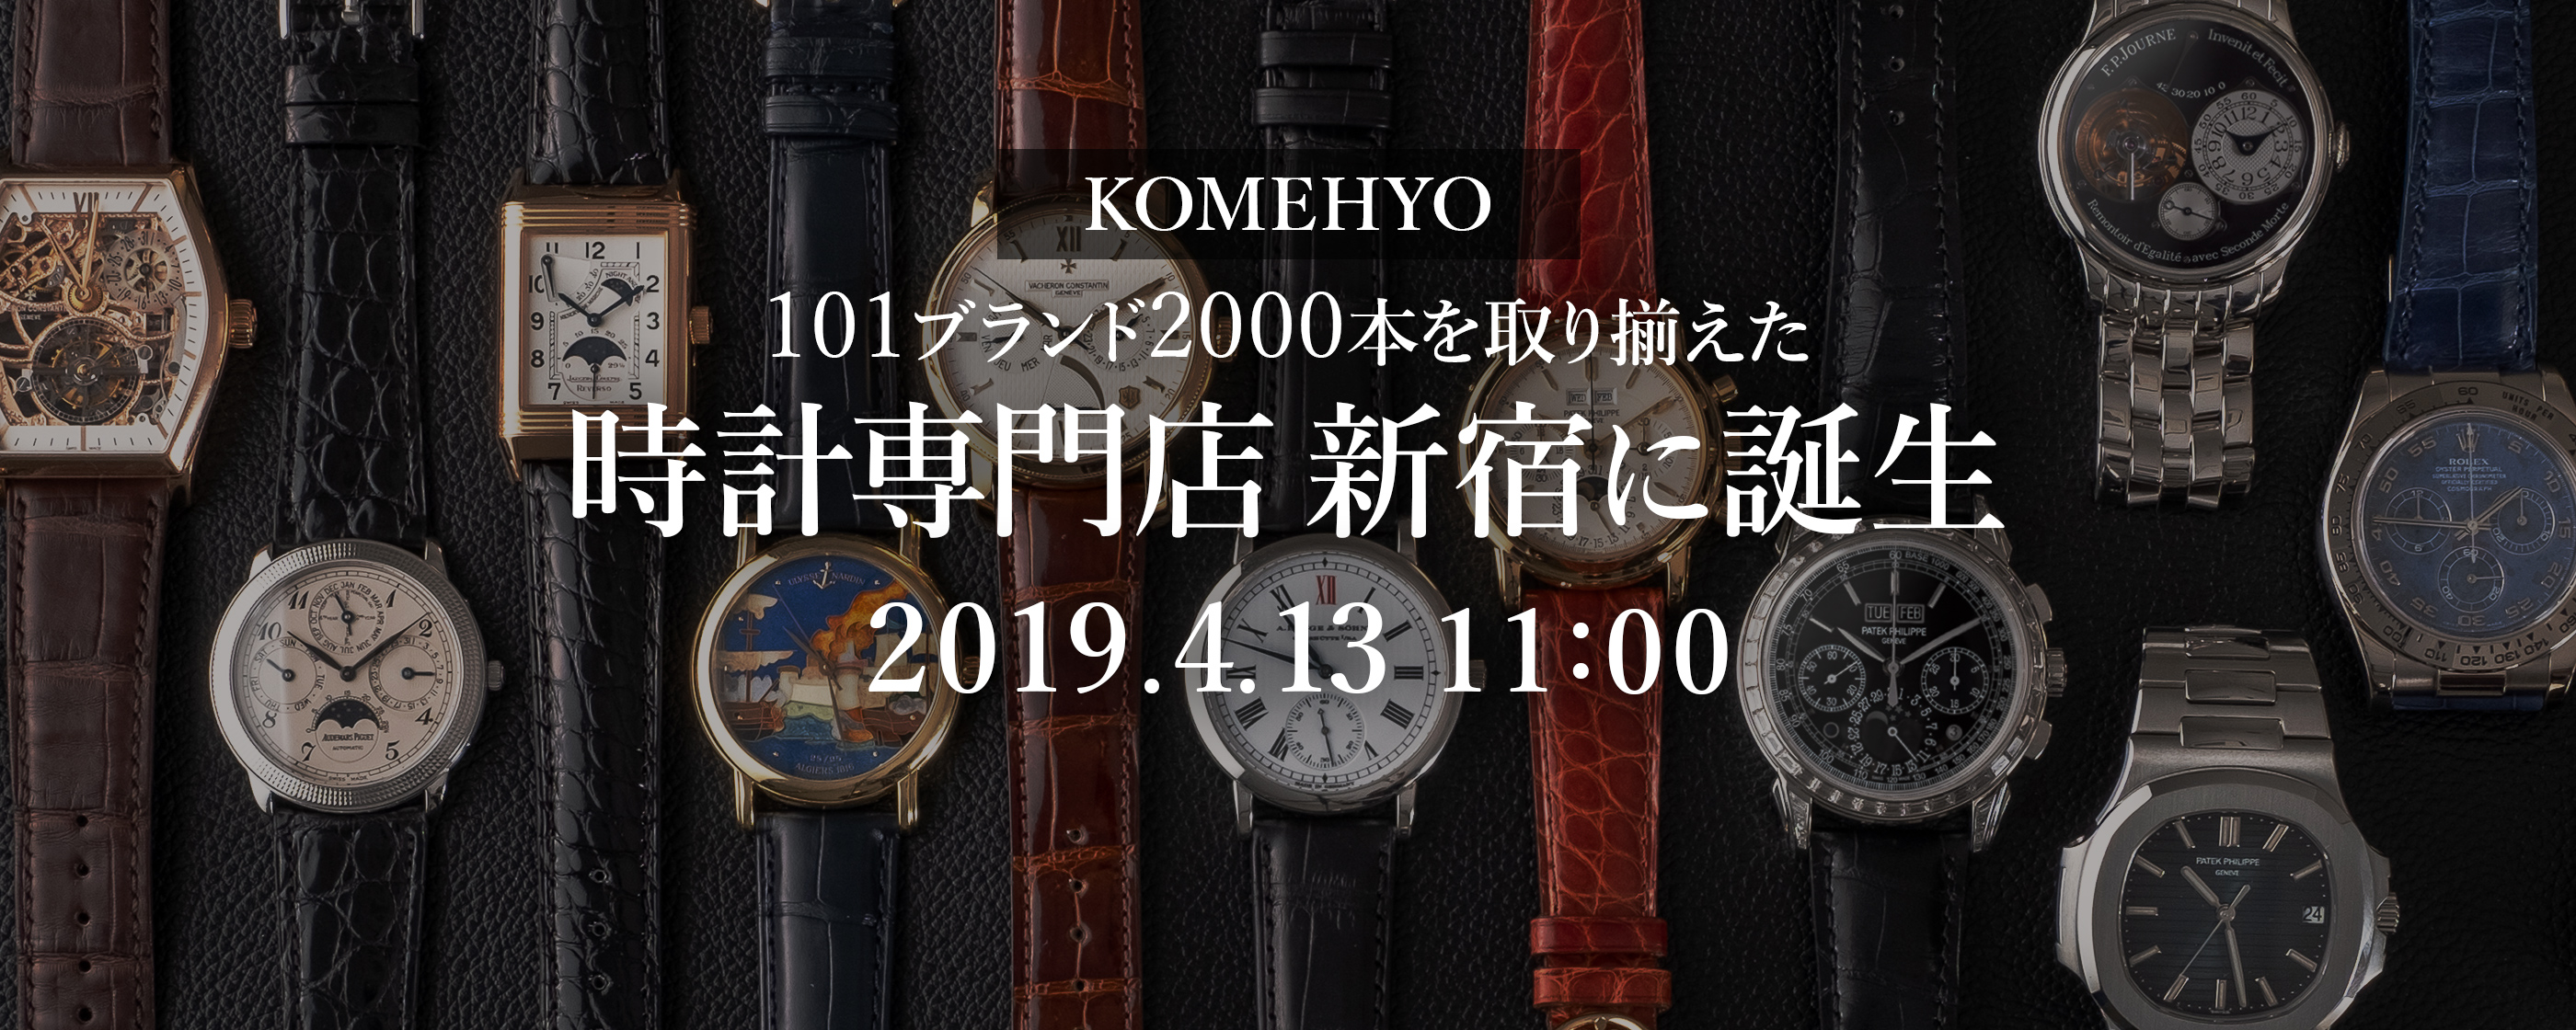 在凑齐2000部101品牌的钟表专营商店新宿诞生2019.4.13 11:00